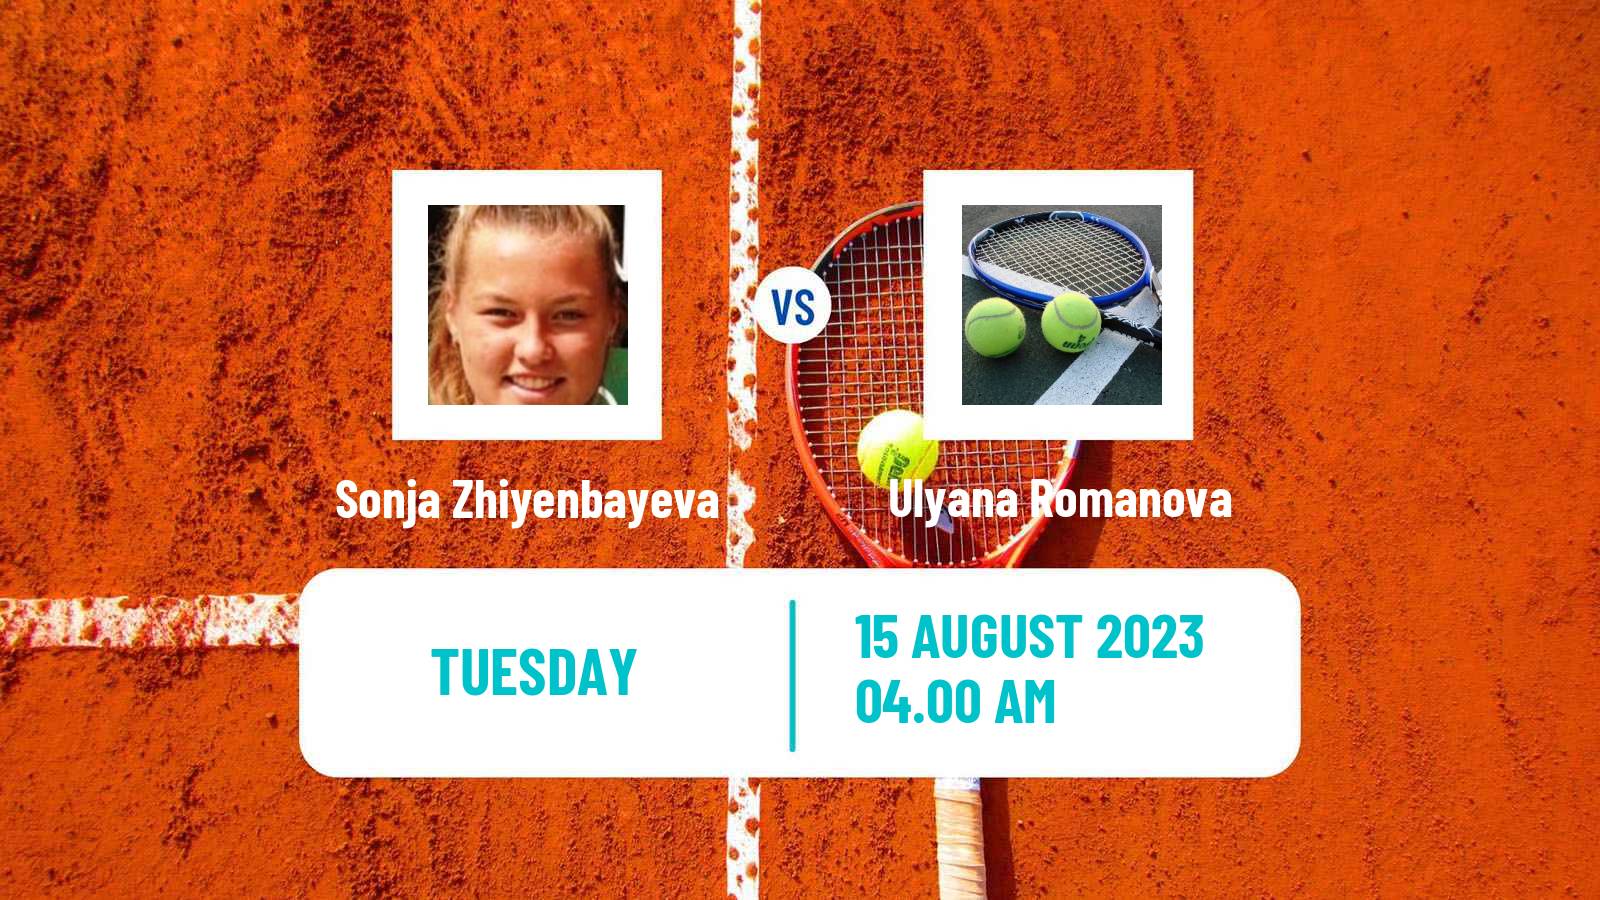 Tennis ITF W15 Ust Kamenogorsk 2 Women Sonja Zhiyenbayeva - Ulyana Romanova